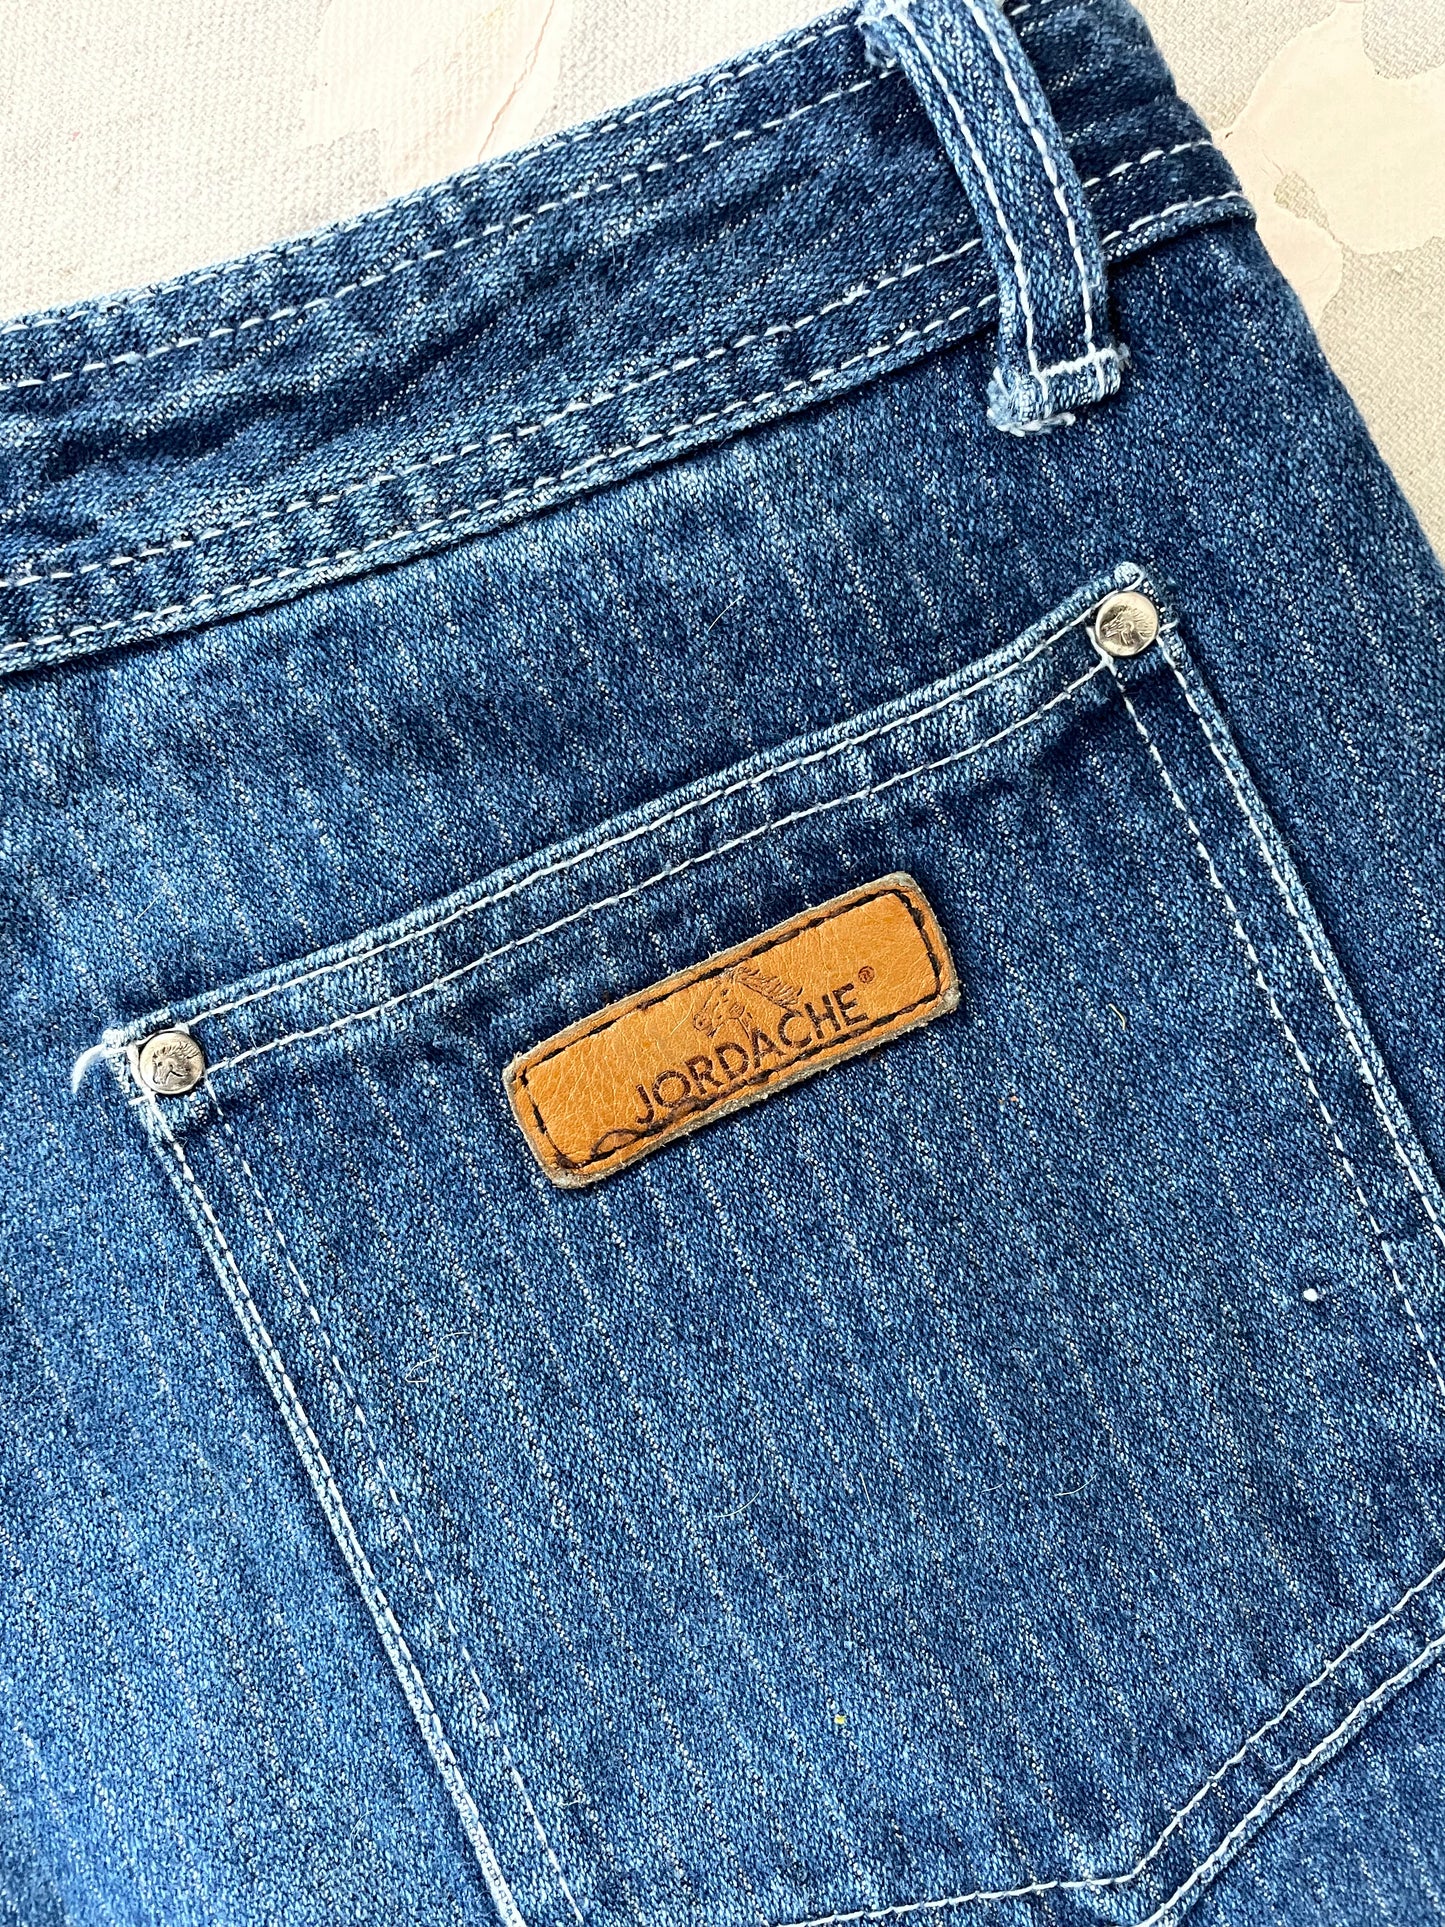 80s Jordache Pinstripe Jeans